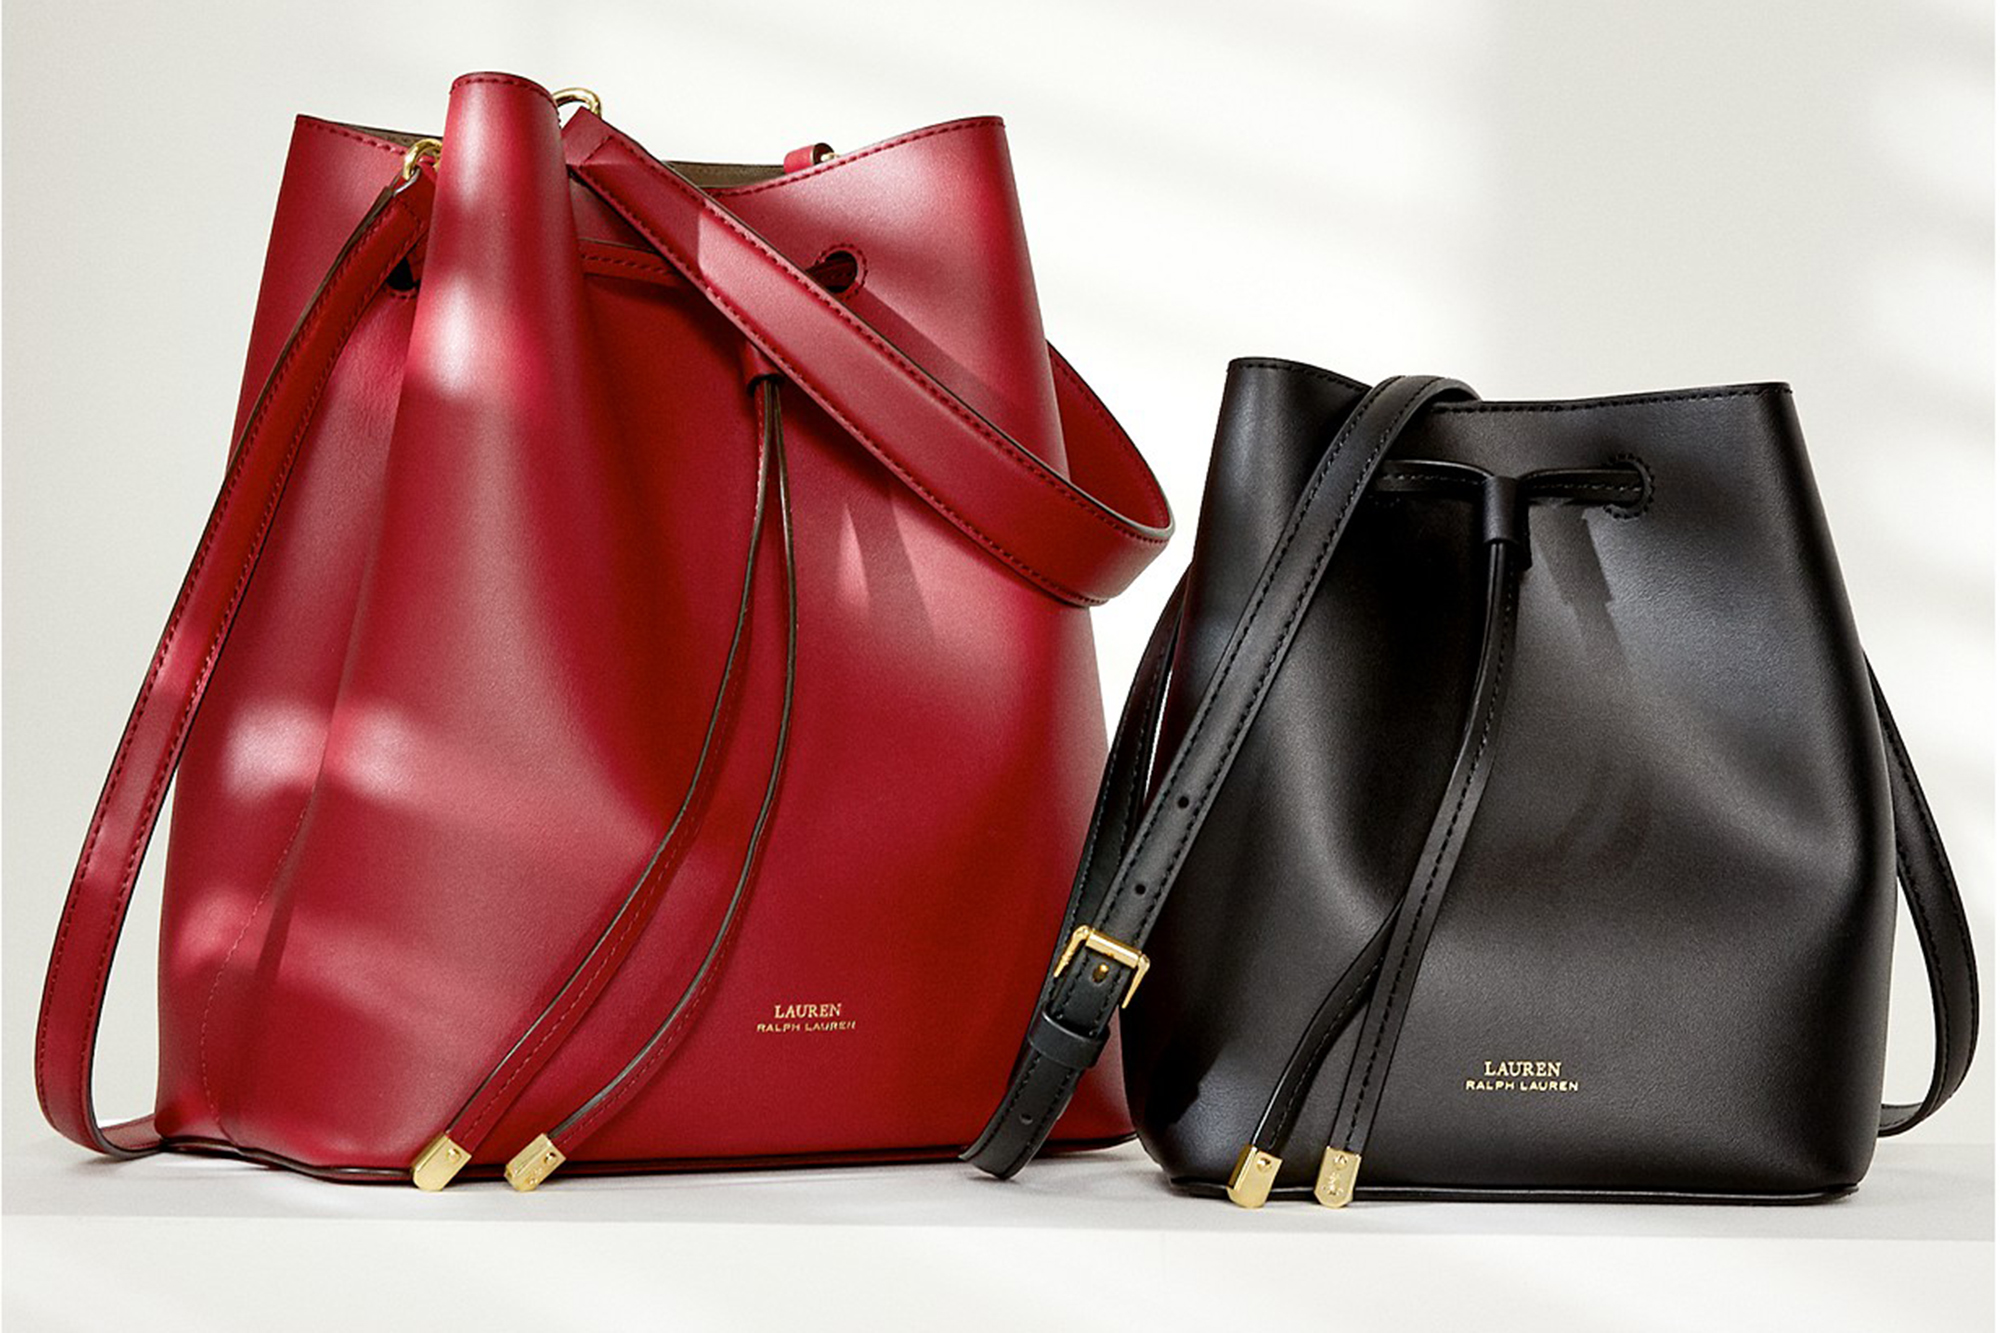 Ralph Lauren Women's Handbags - Bags